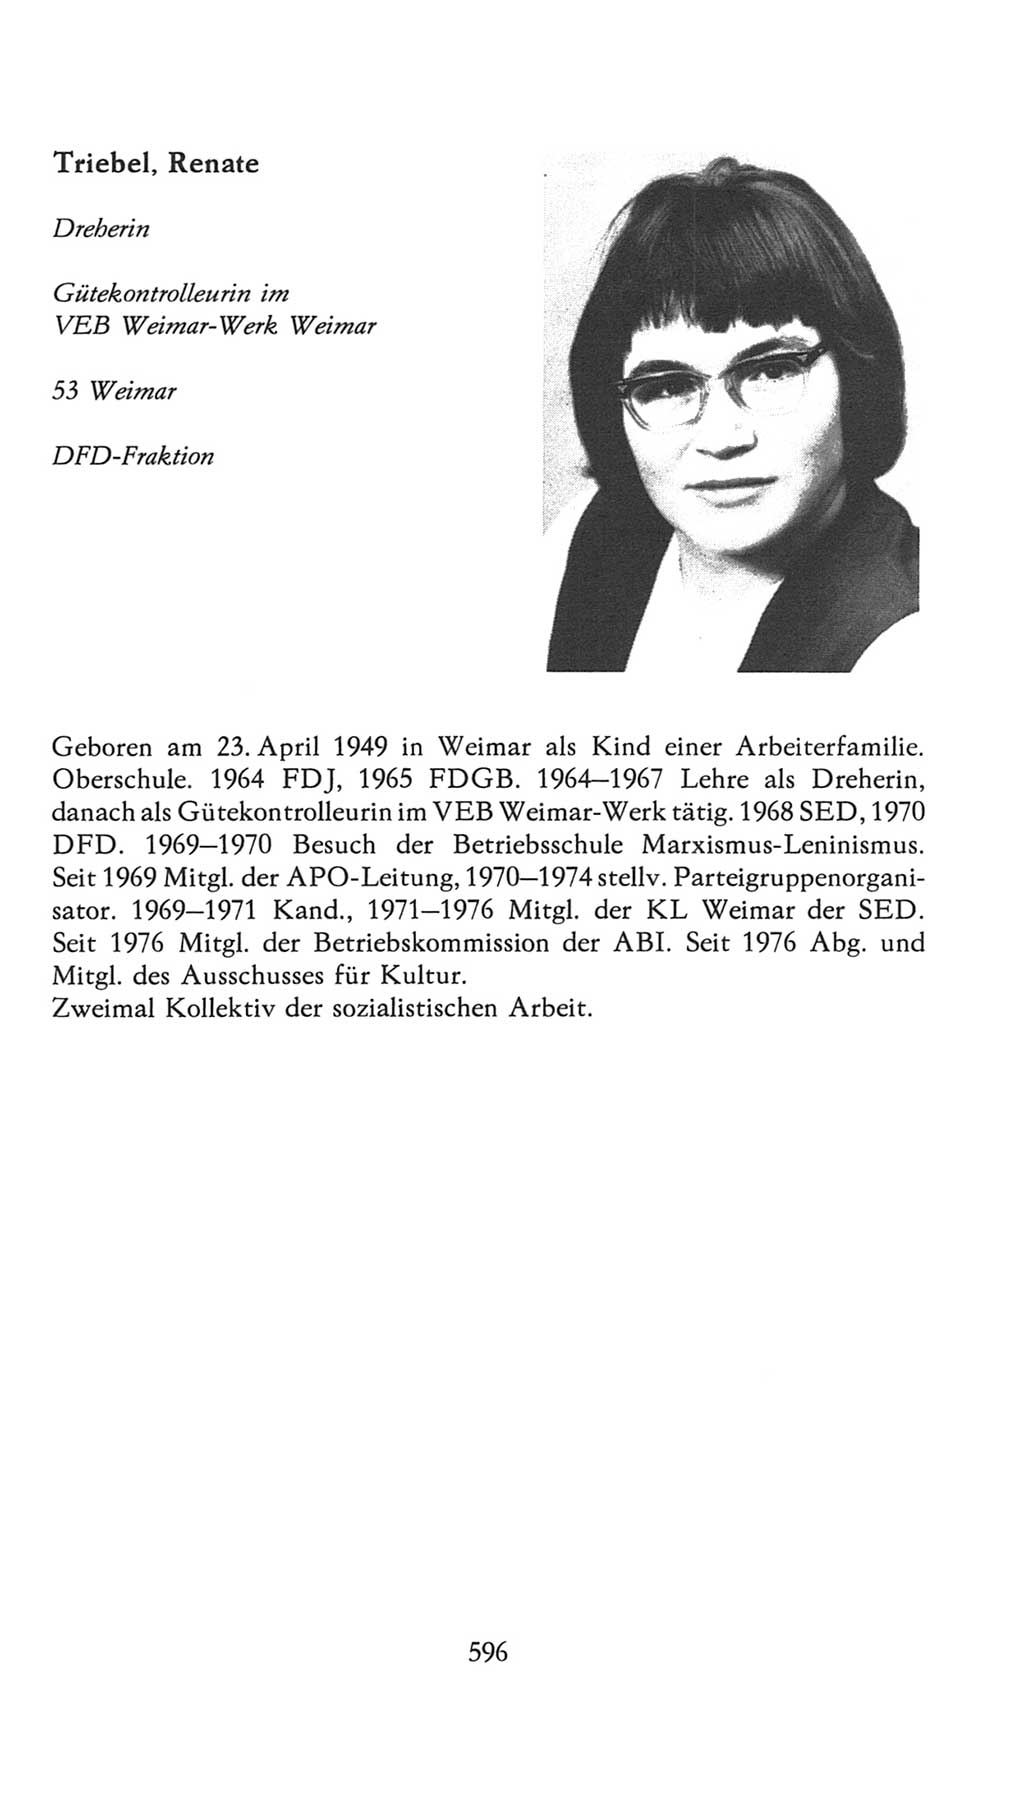 Volkskammer (VK) der Deutschen Demokratischen Republik (DDR), 7. Wahlperiode 1976-1981, Seite 596 (VK. DDR 7. WP. 1976-1981, S. 596)